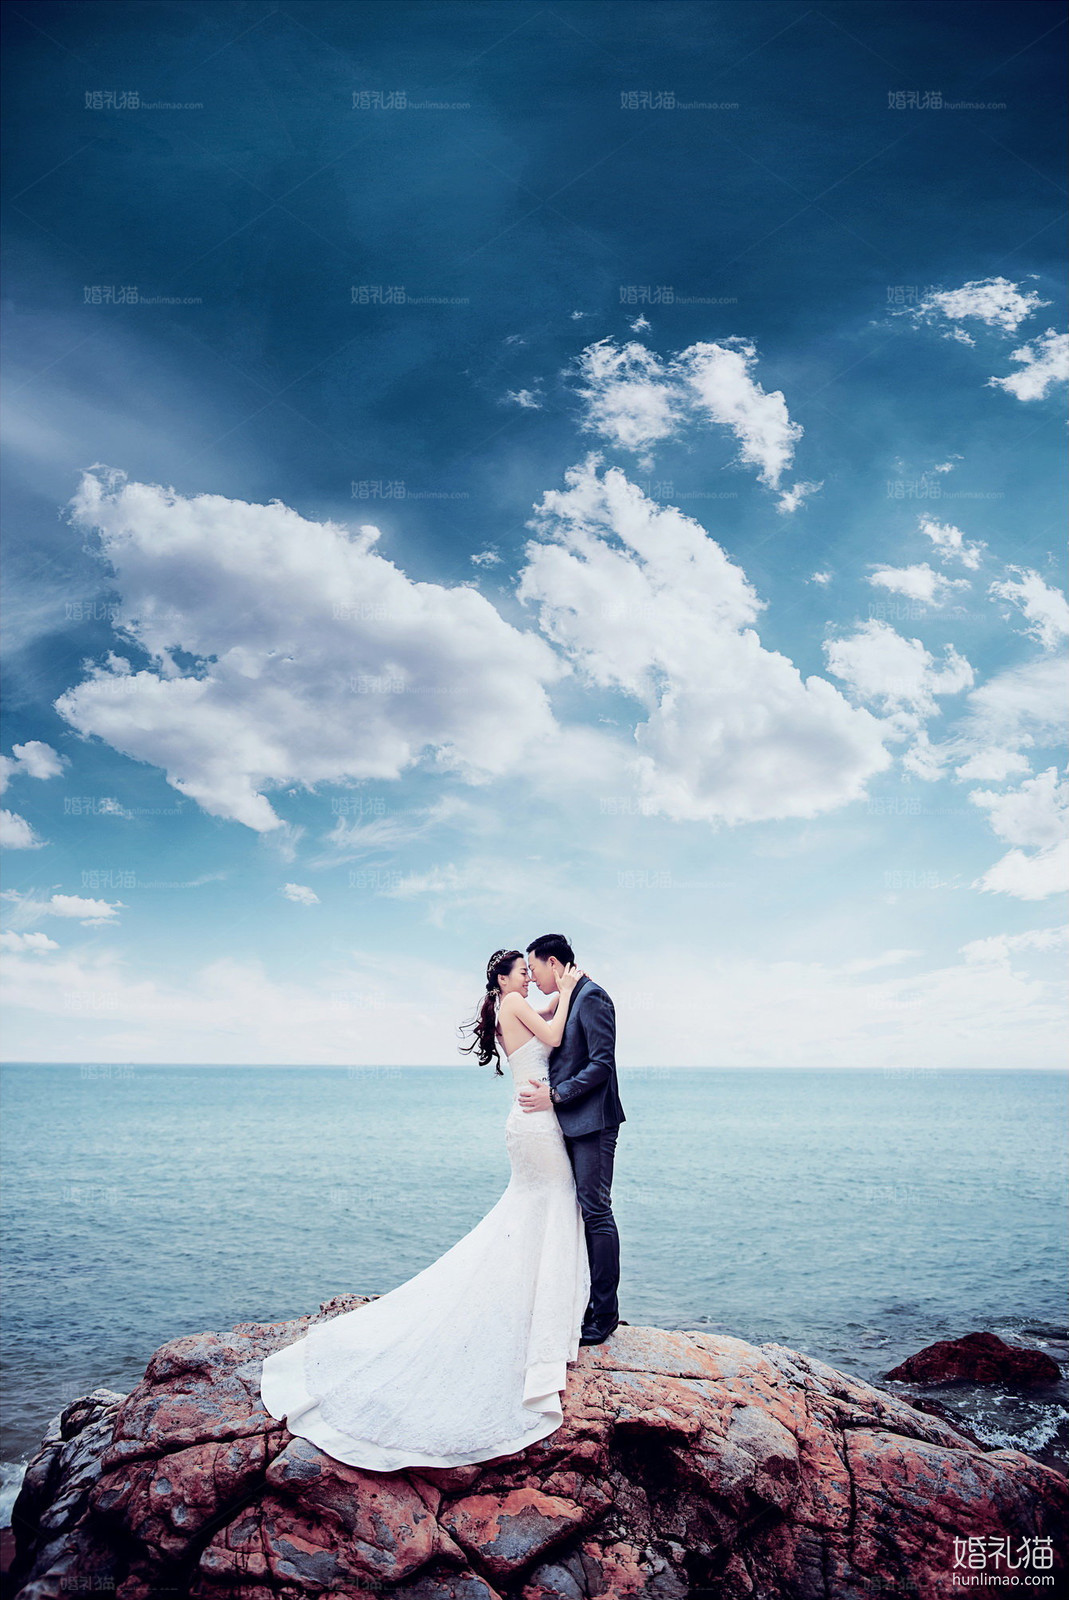 海景结婚照,[海景, 礁石],茂名婚纱照,婚纱照图片